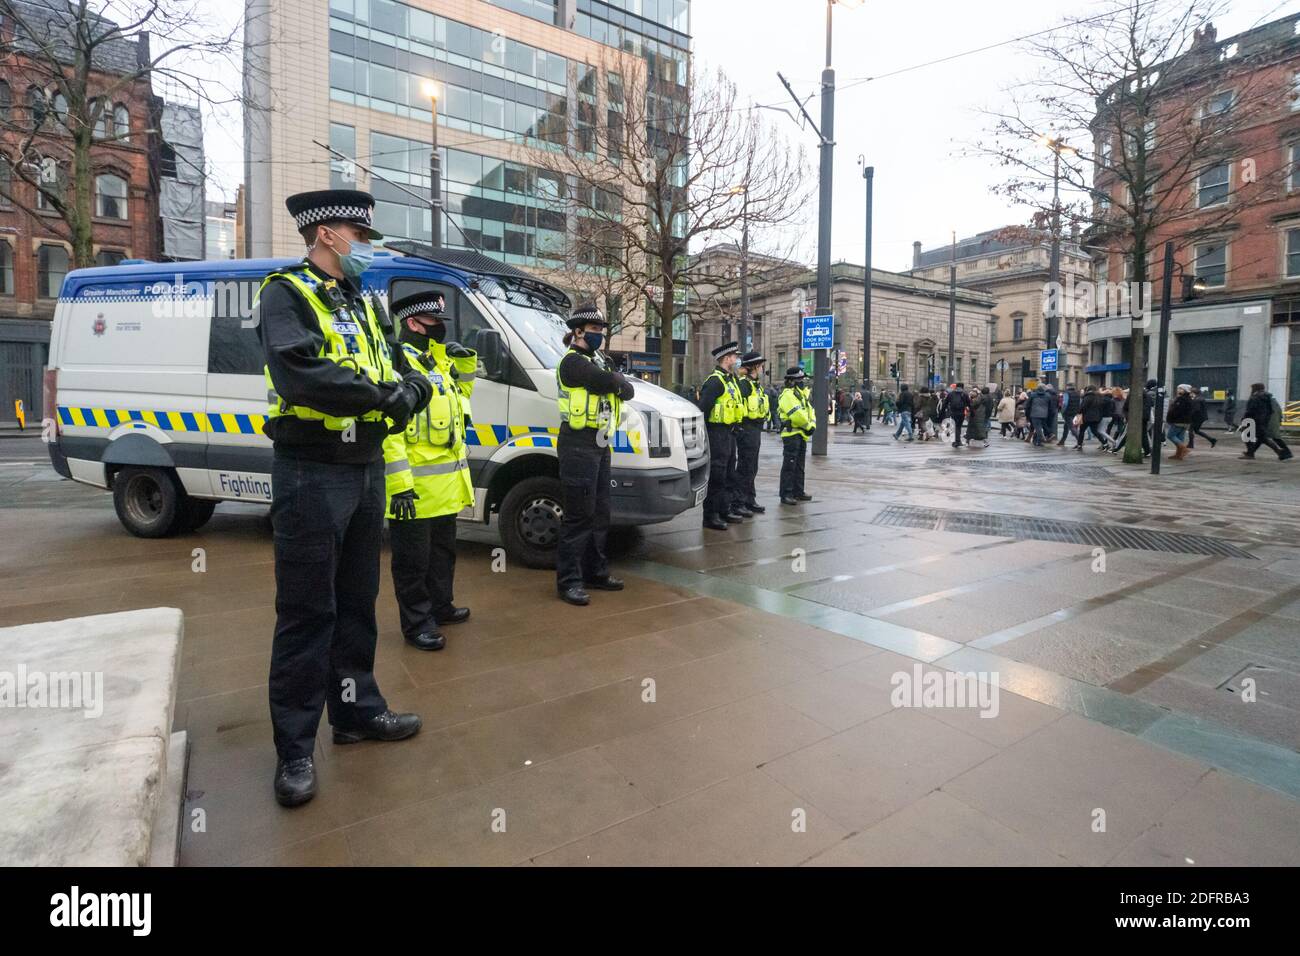 Manchester le 6 décembre 2020: Une marche de protestation pour les libertés, l'anti-verrouillage, système anti-Tier. La police se réunit alors que les manifestants traversent la ville Banque D'Images